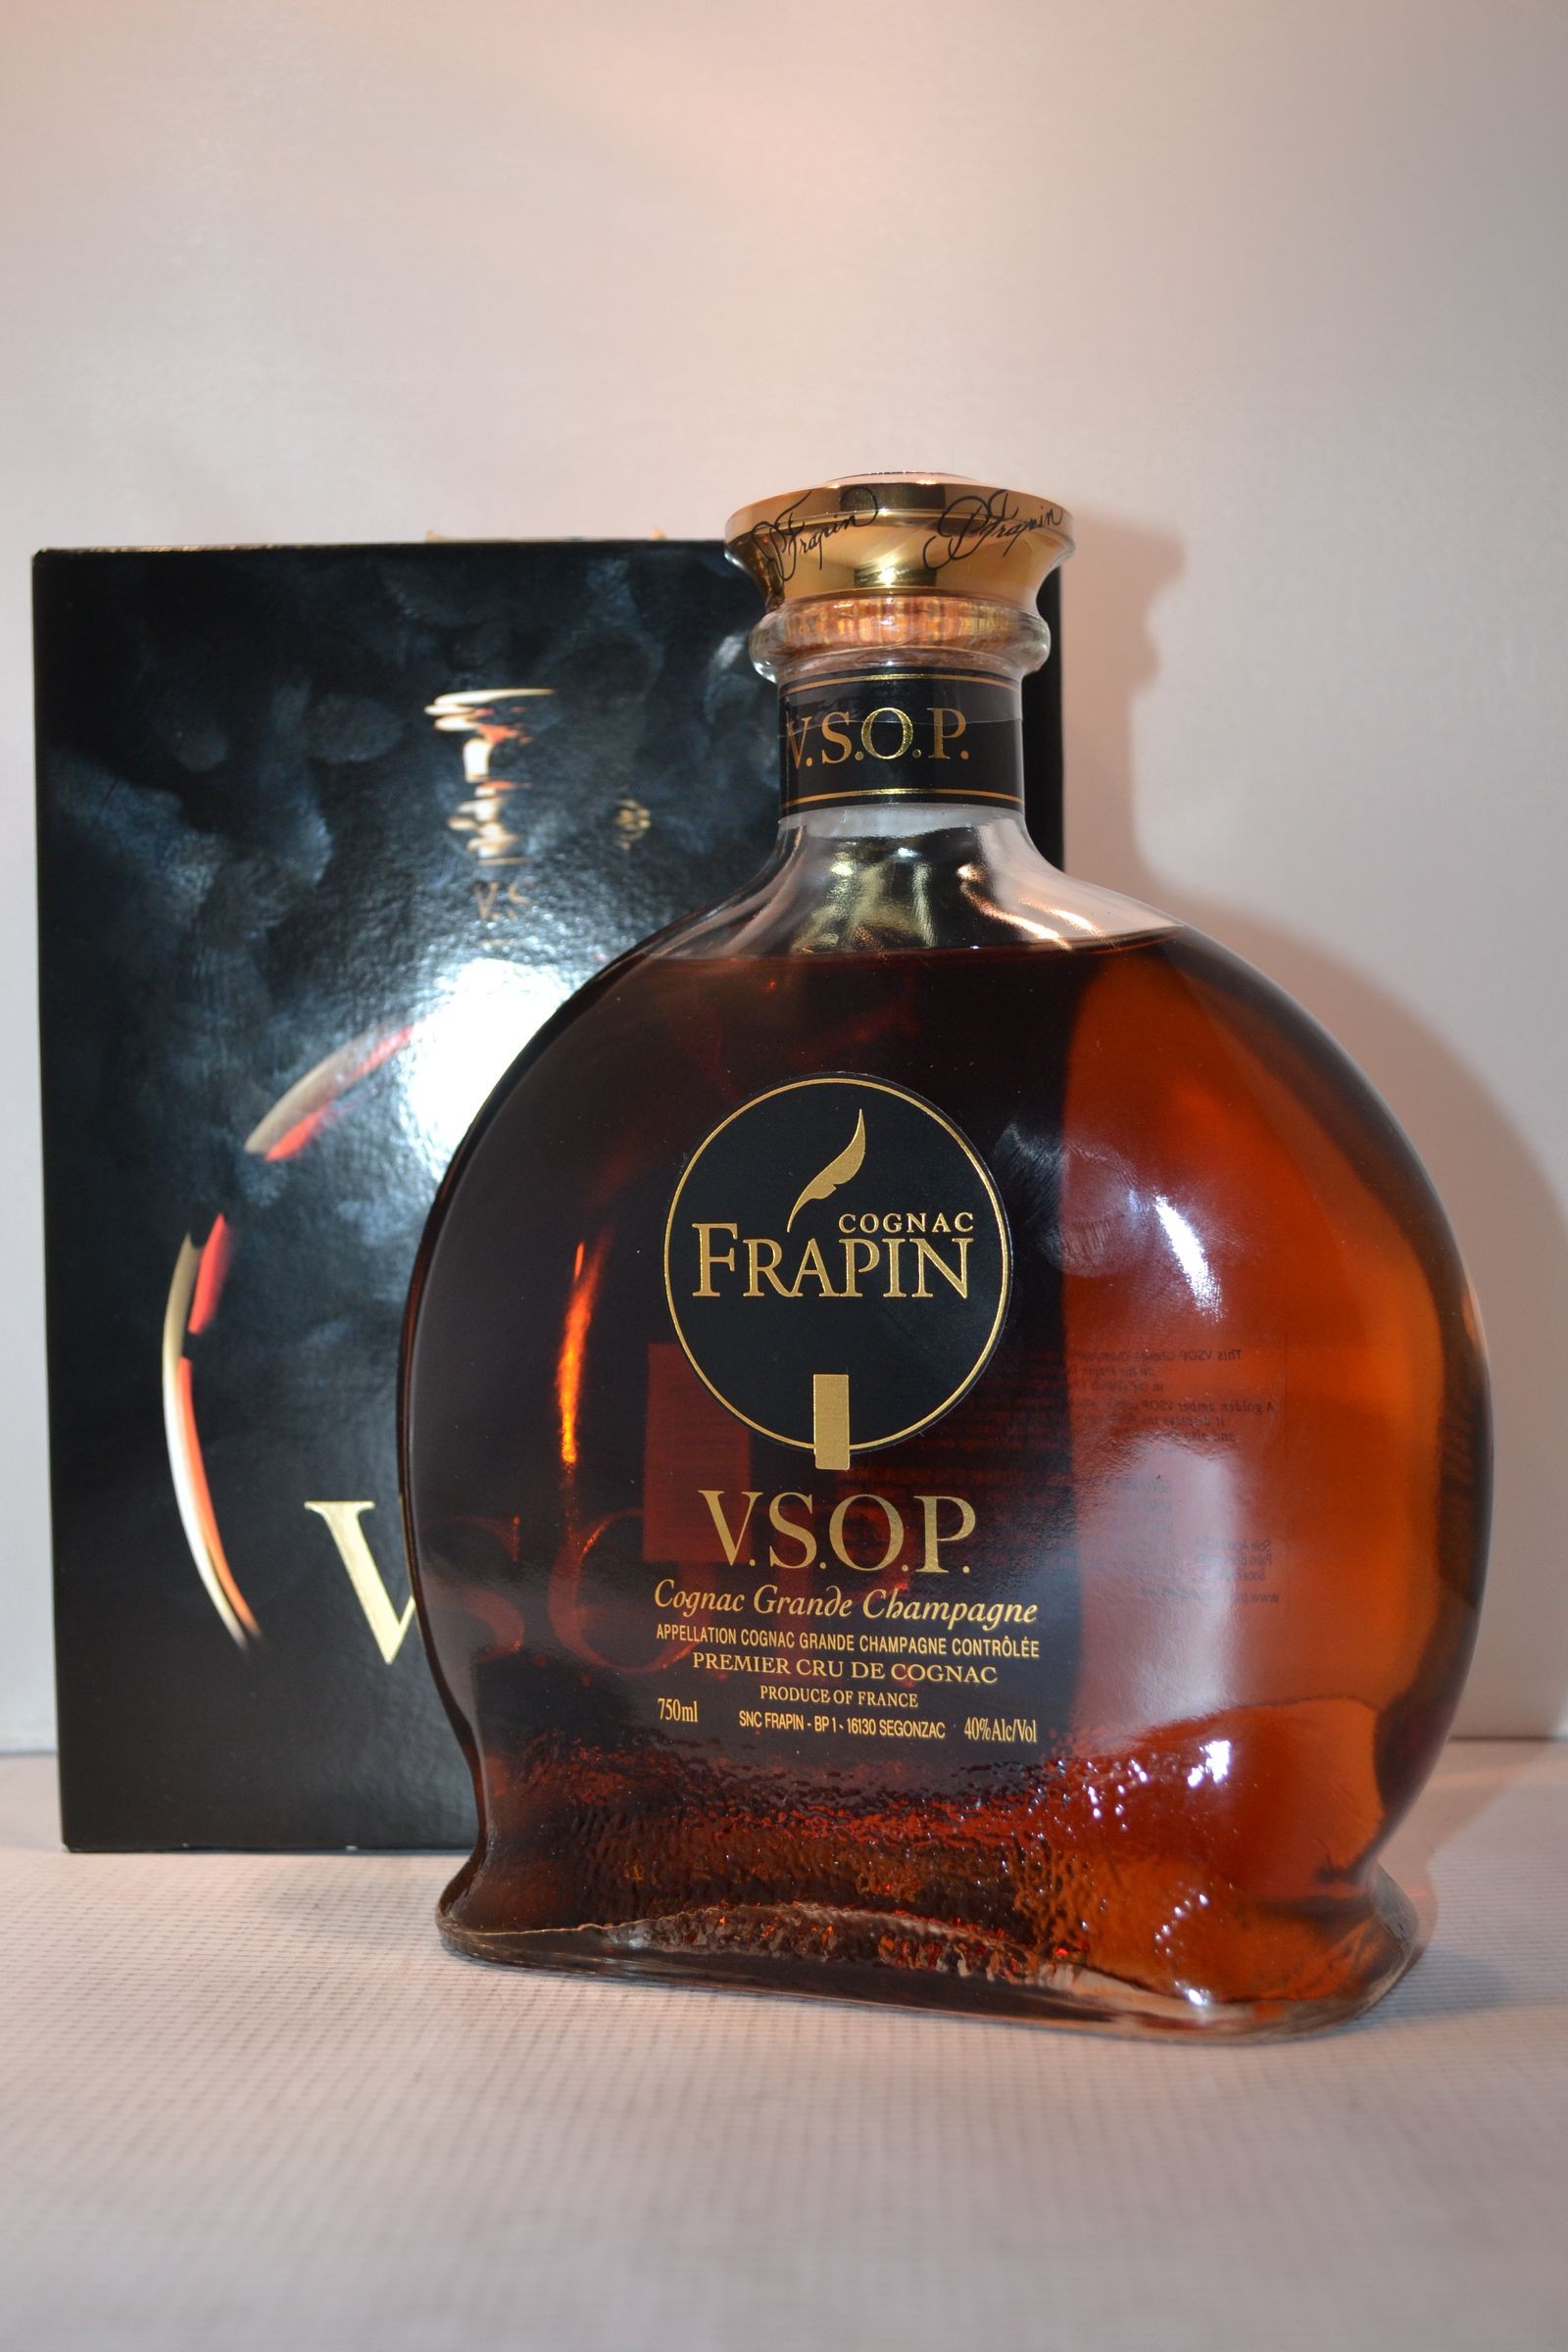 Frapin 0.7 цена. Frapin Cognac коньяк. Коньяк Фрапэн ВСОП. Frapin VSOP 2013. Коньяк Frapin VSOP.